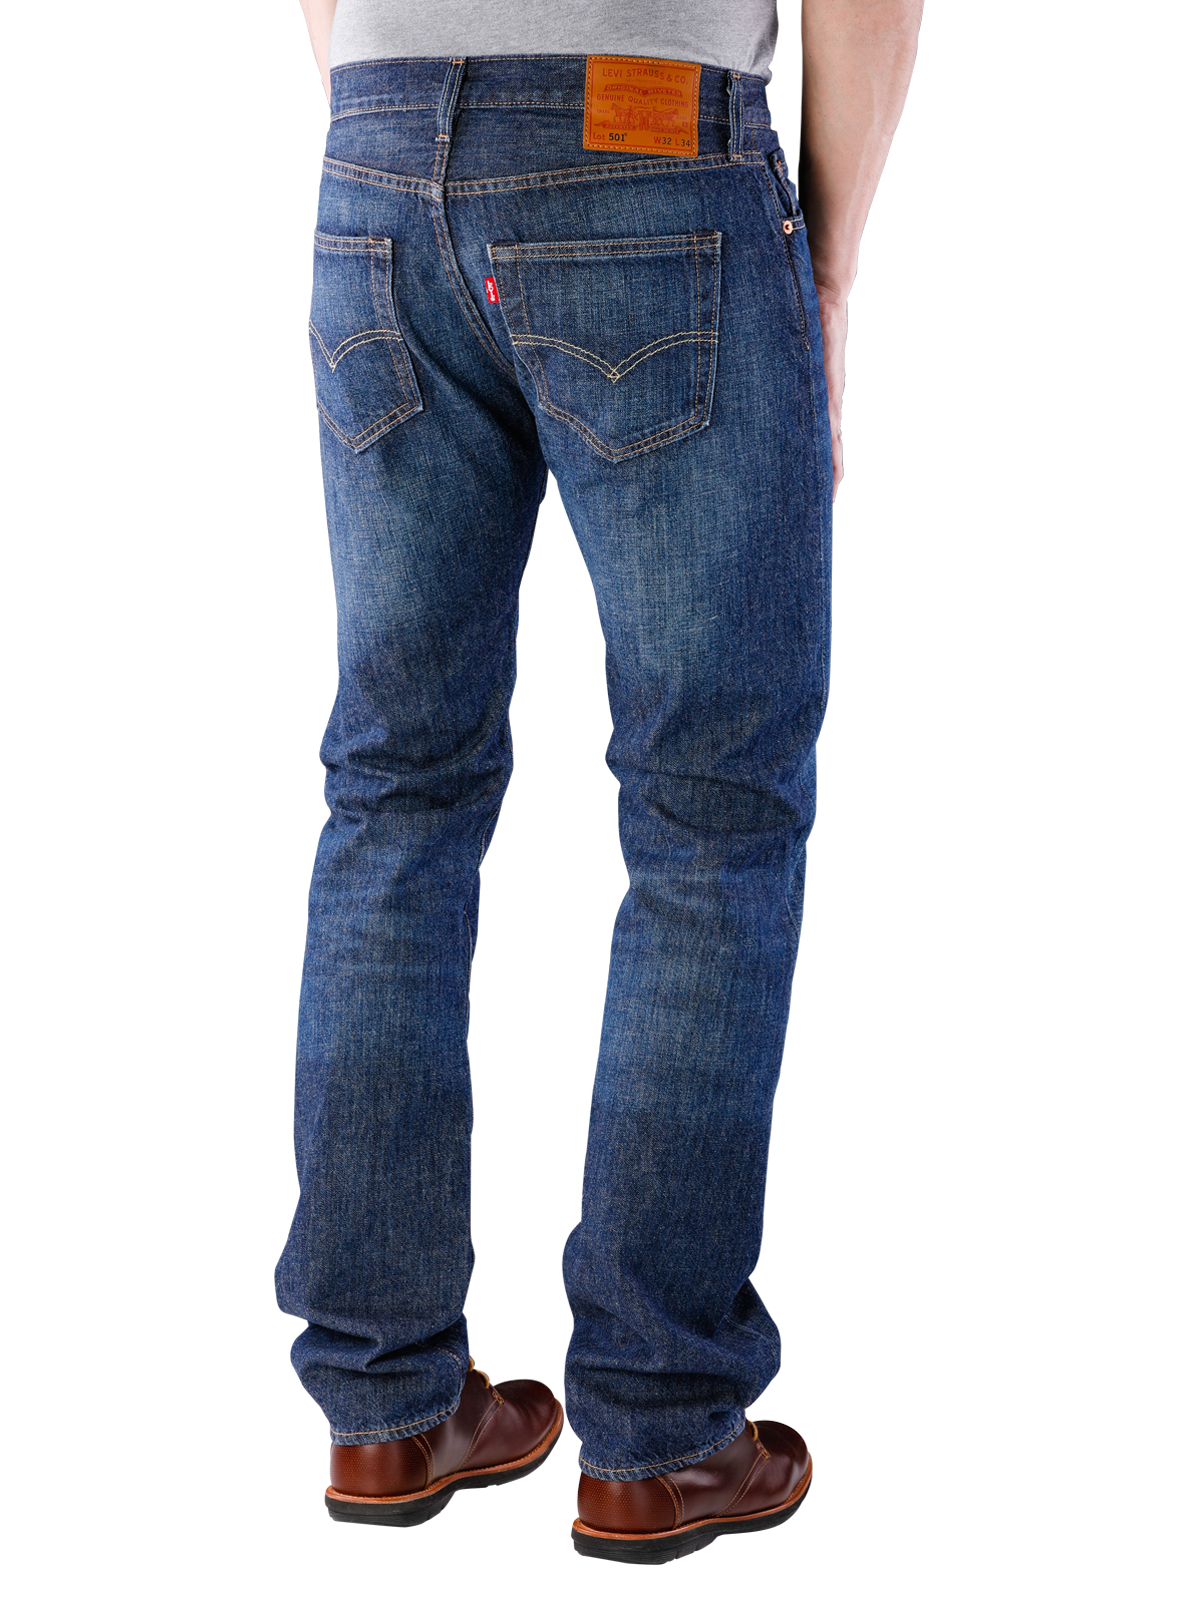 Levis 501 Jeans Straight Fit cheviot  Gratis Lieferung